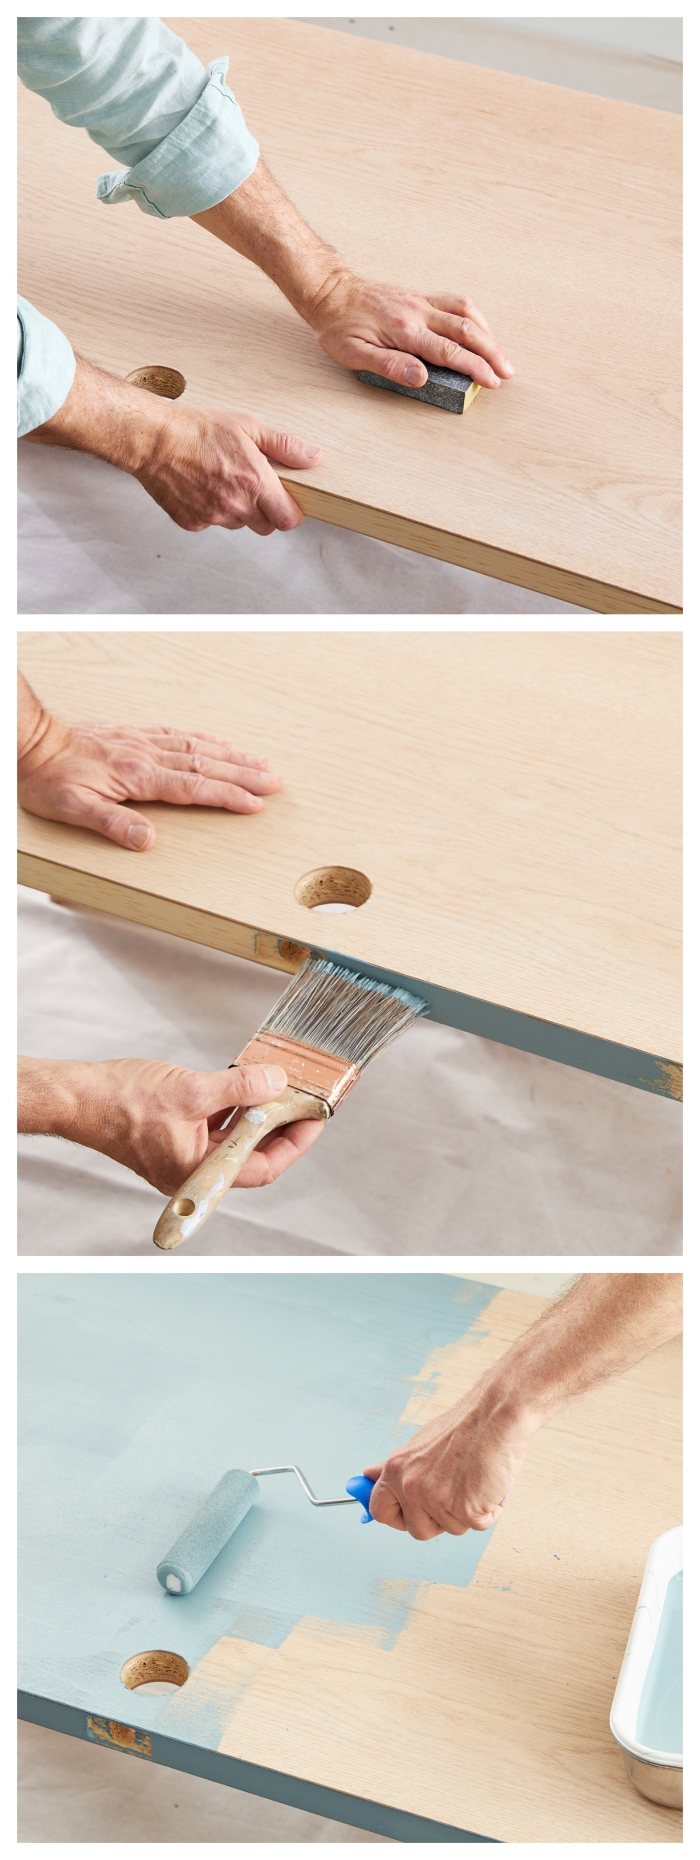 les astuces pratiques pour peindre une porte en bois plate en trois étapes faciles, tuto ponçage et pose de la peinture